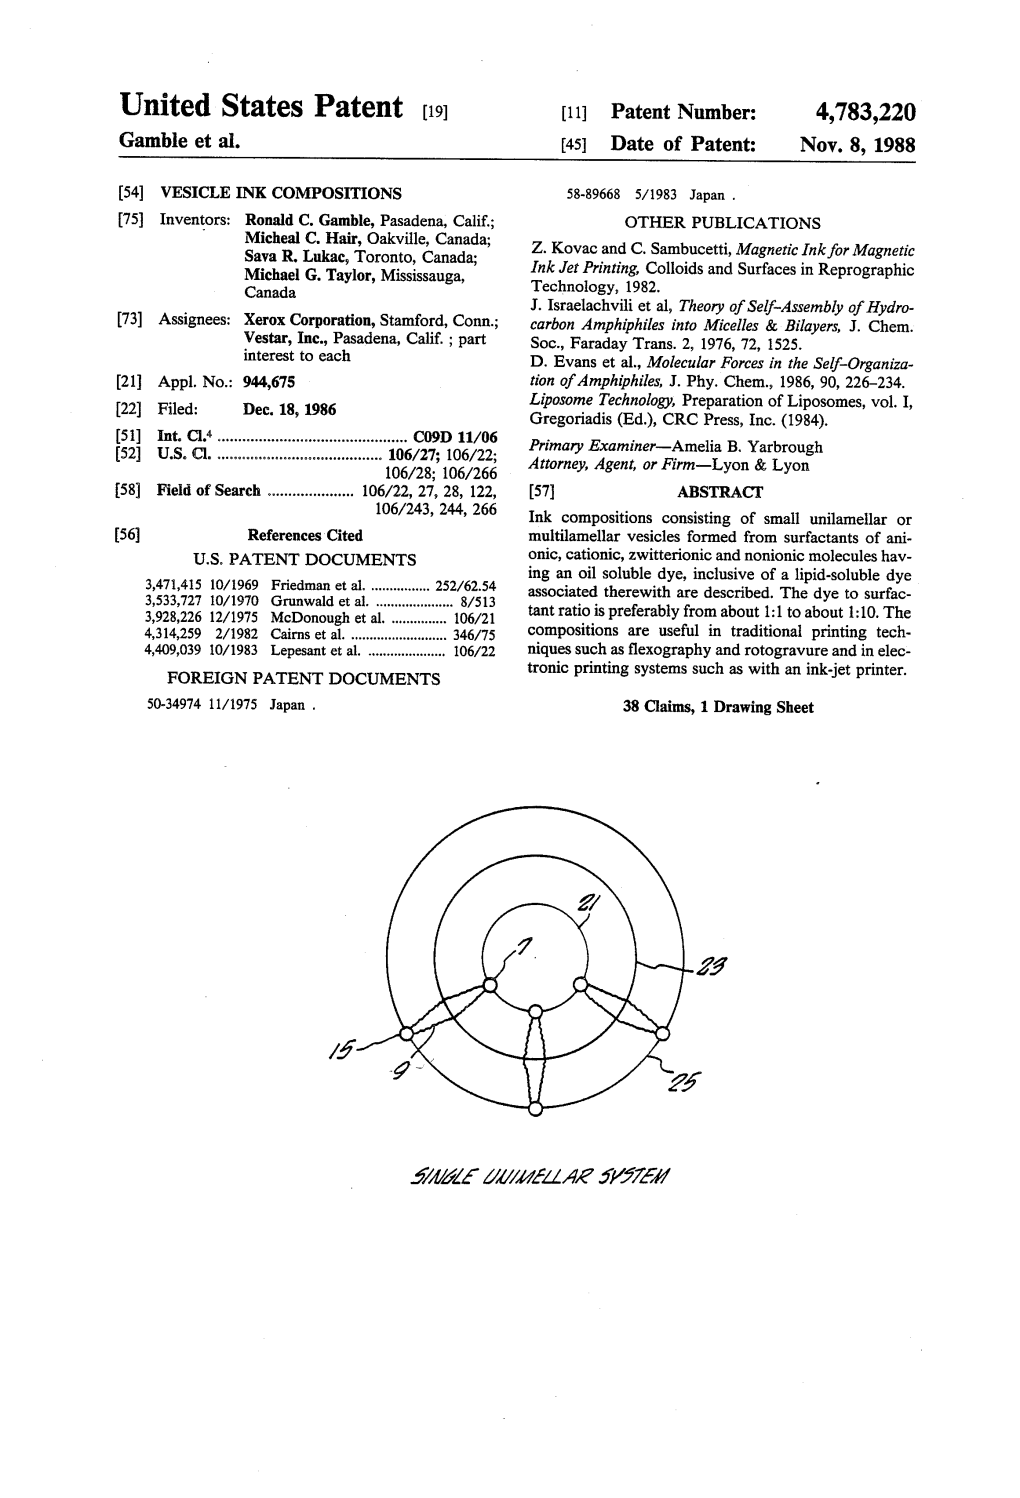 United States Patent (19) 11 Patent Number: 4,783,220 Gamble Et Al